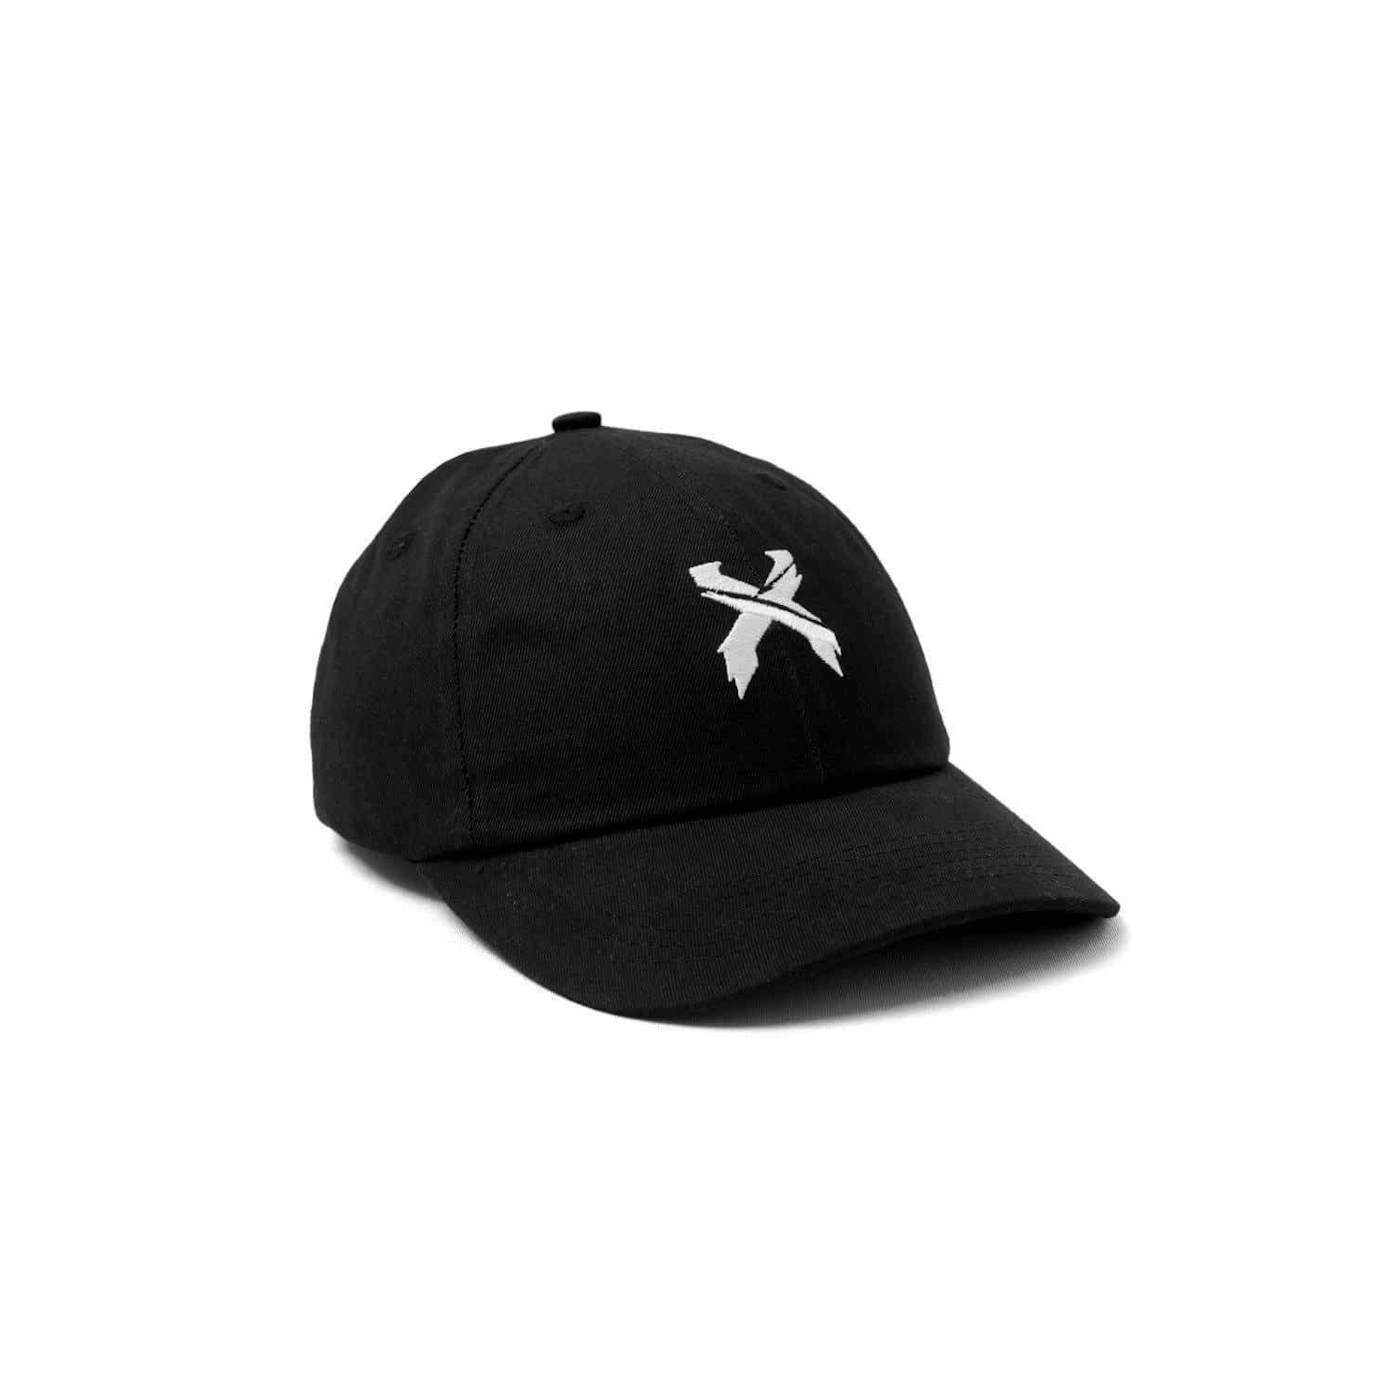 Excision 'Sliced' Logo Dad Hat - Black/White